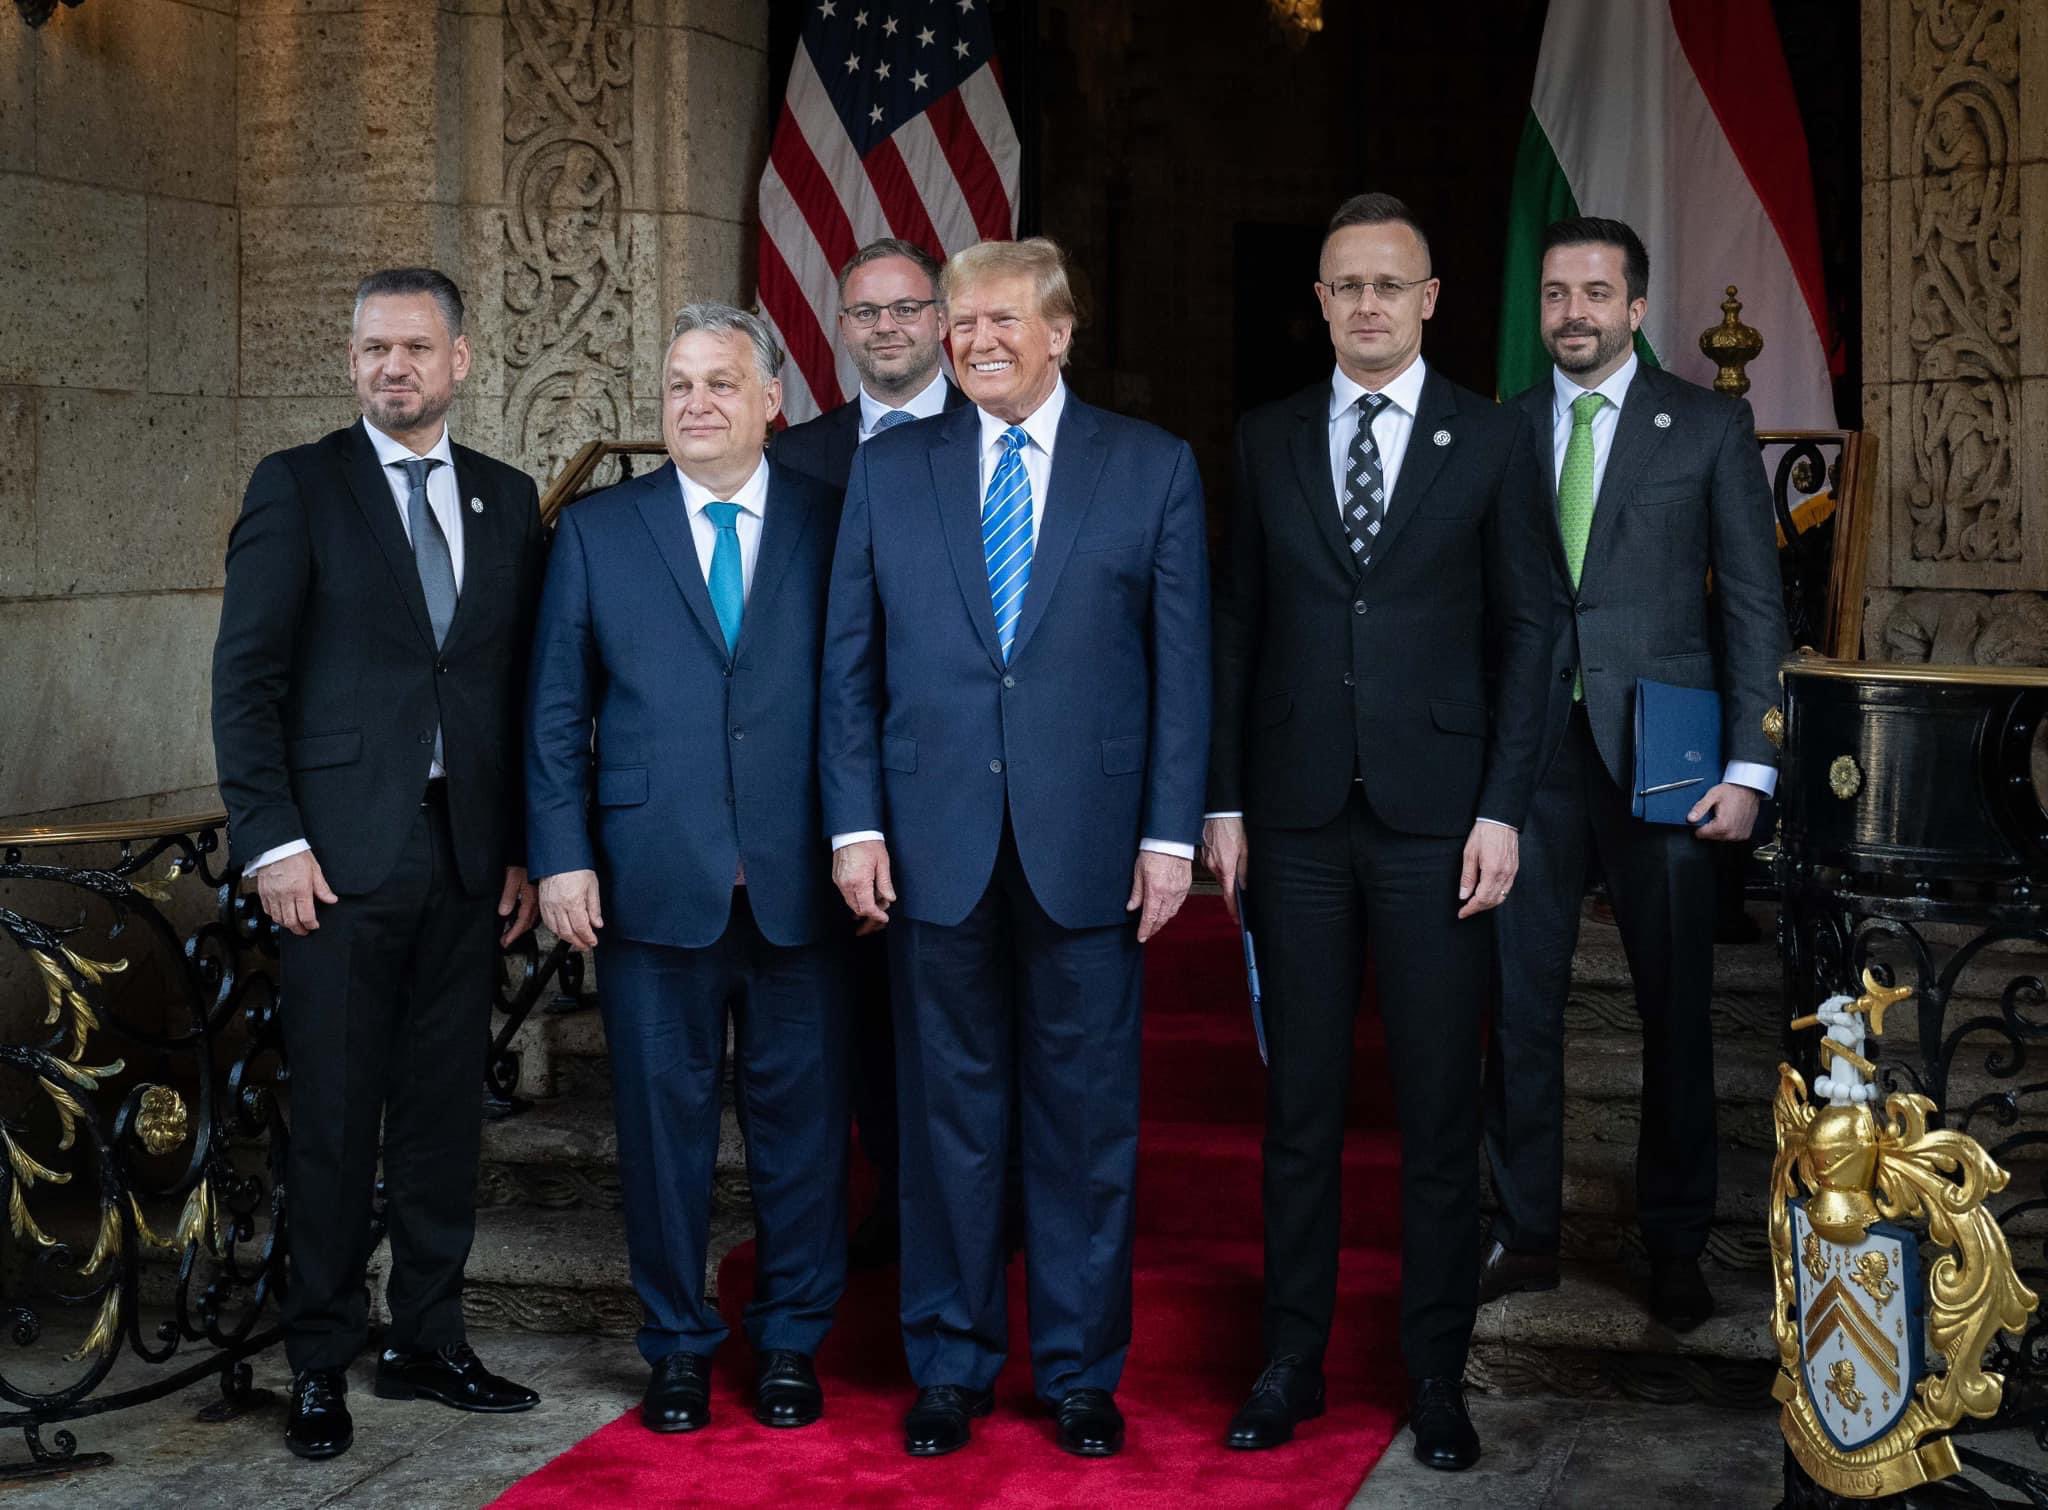 Orbán Meets Trump At Mar-a-Lago